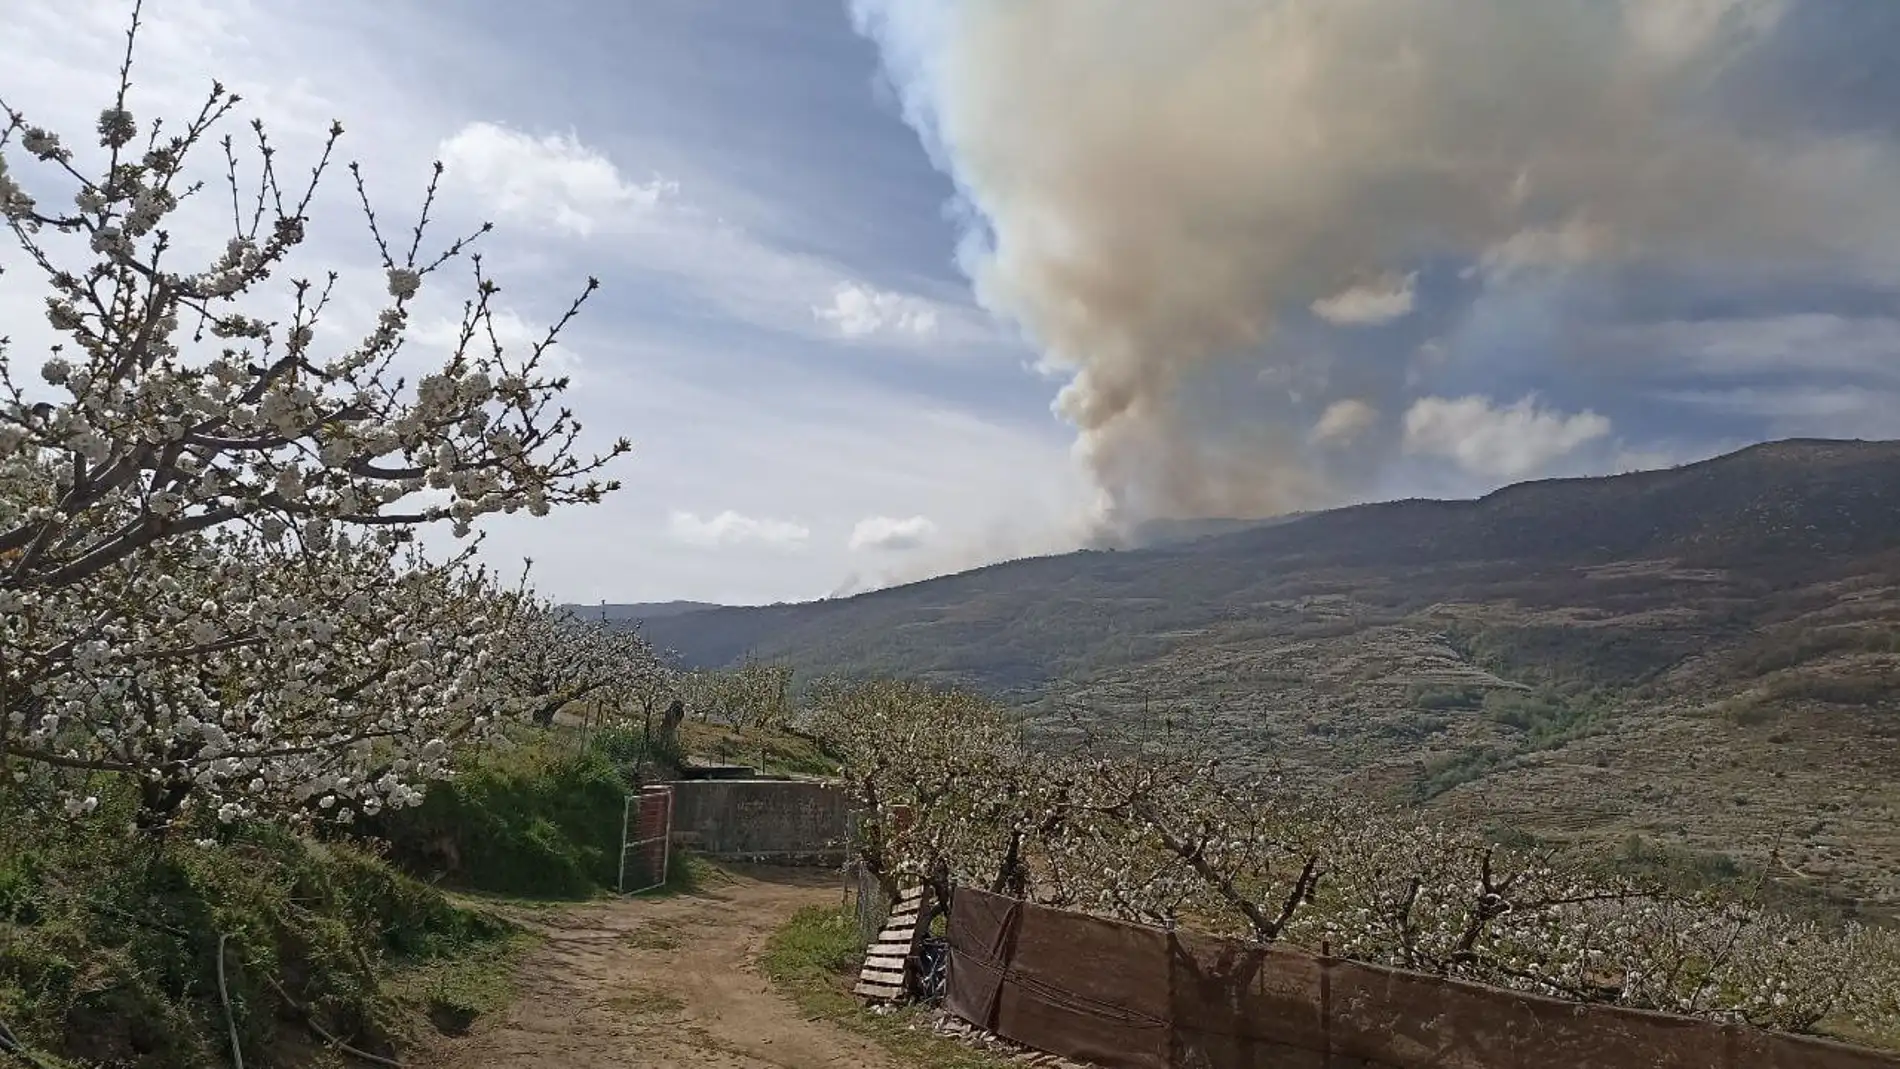 Medios aéreos y terrestres participan en la extinción de un incendio forestal en Navaconcejo